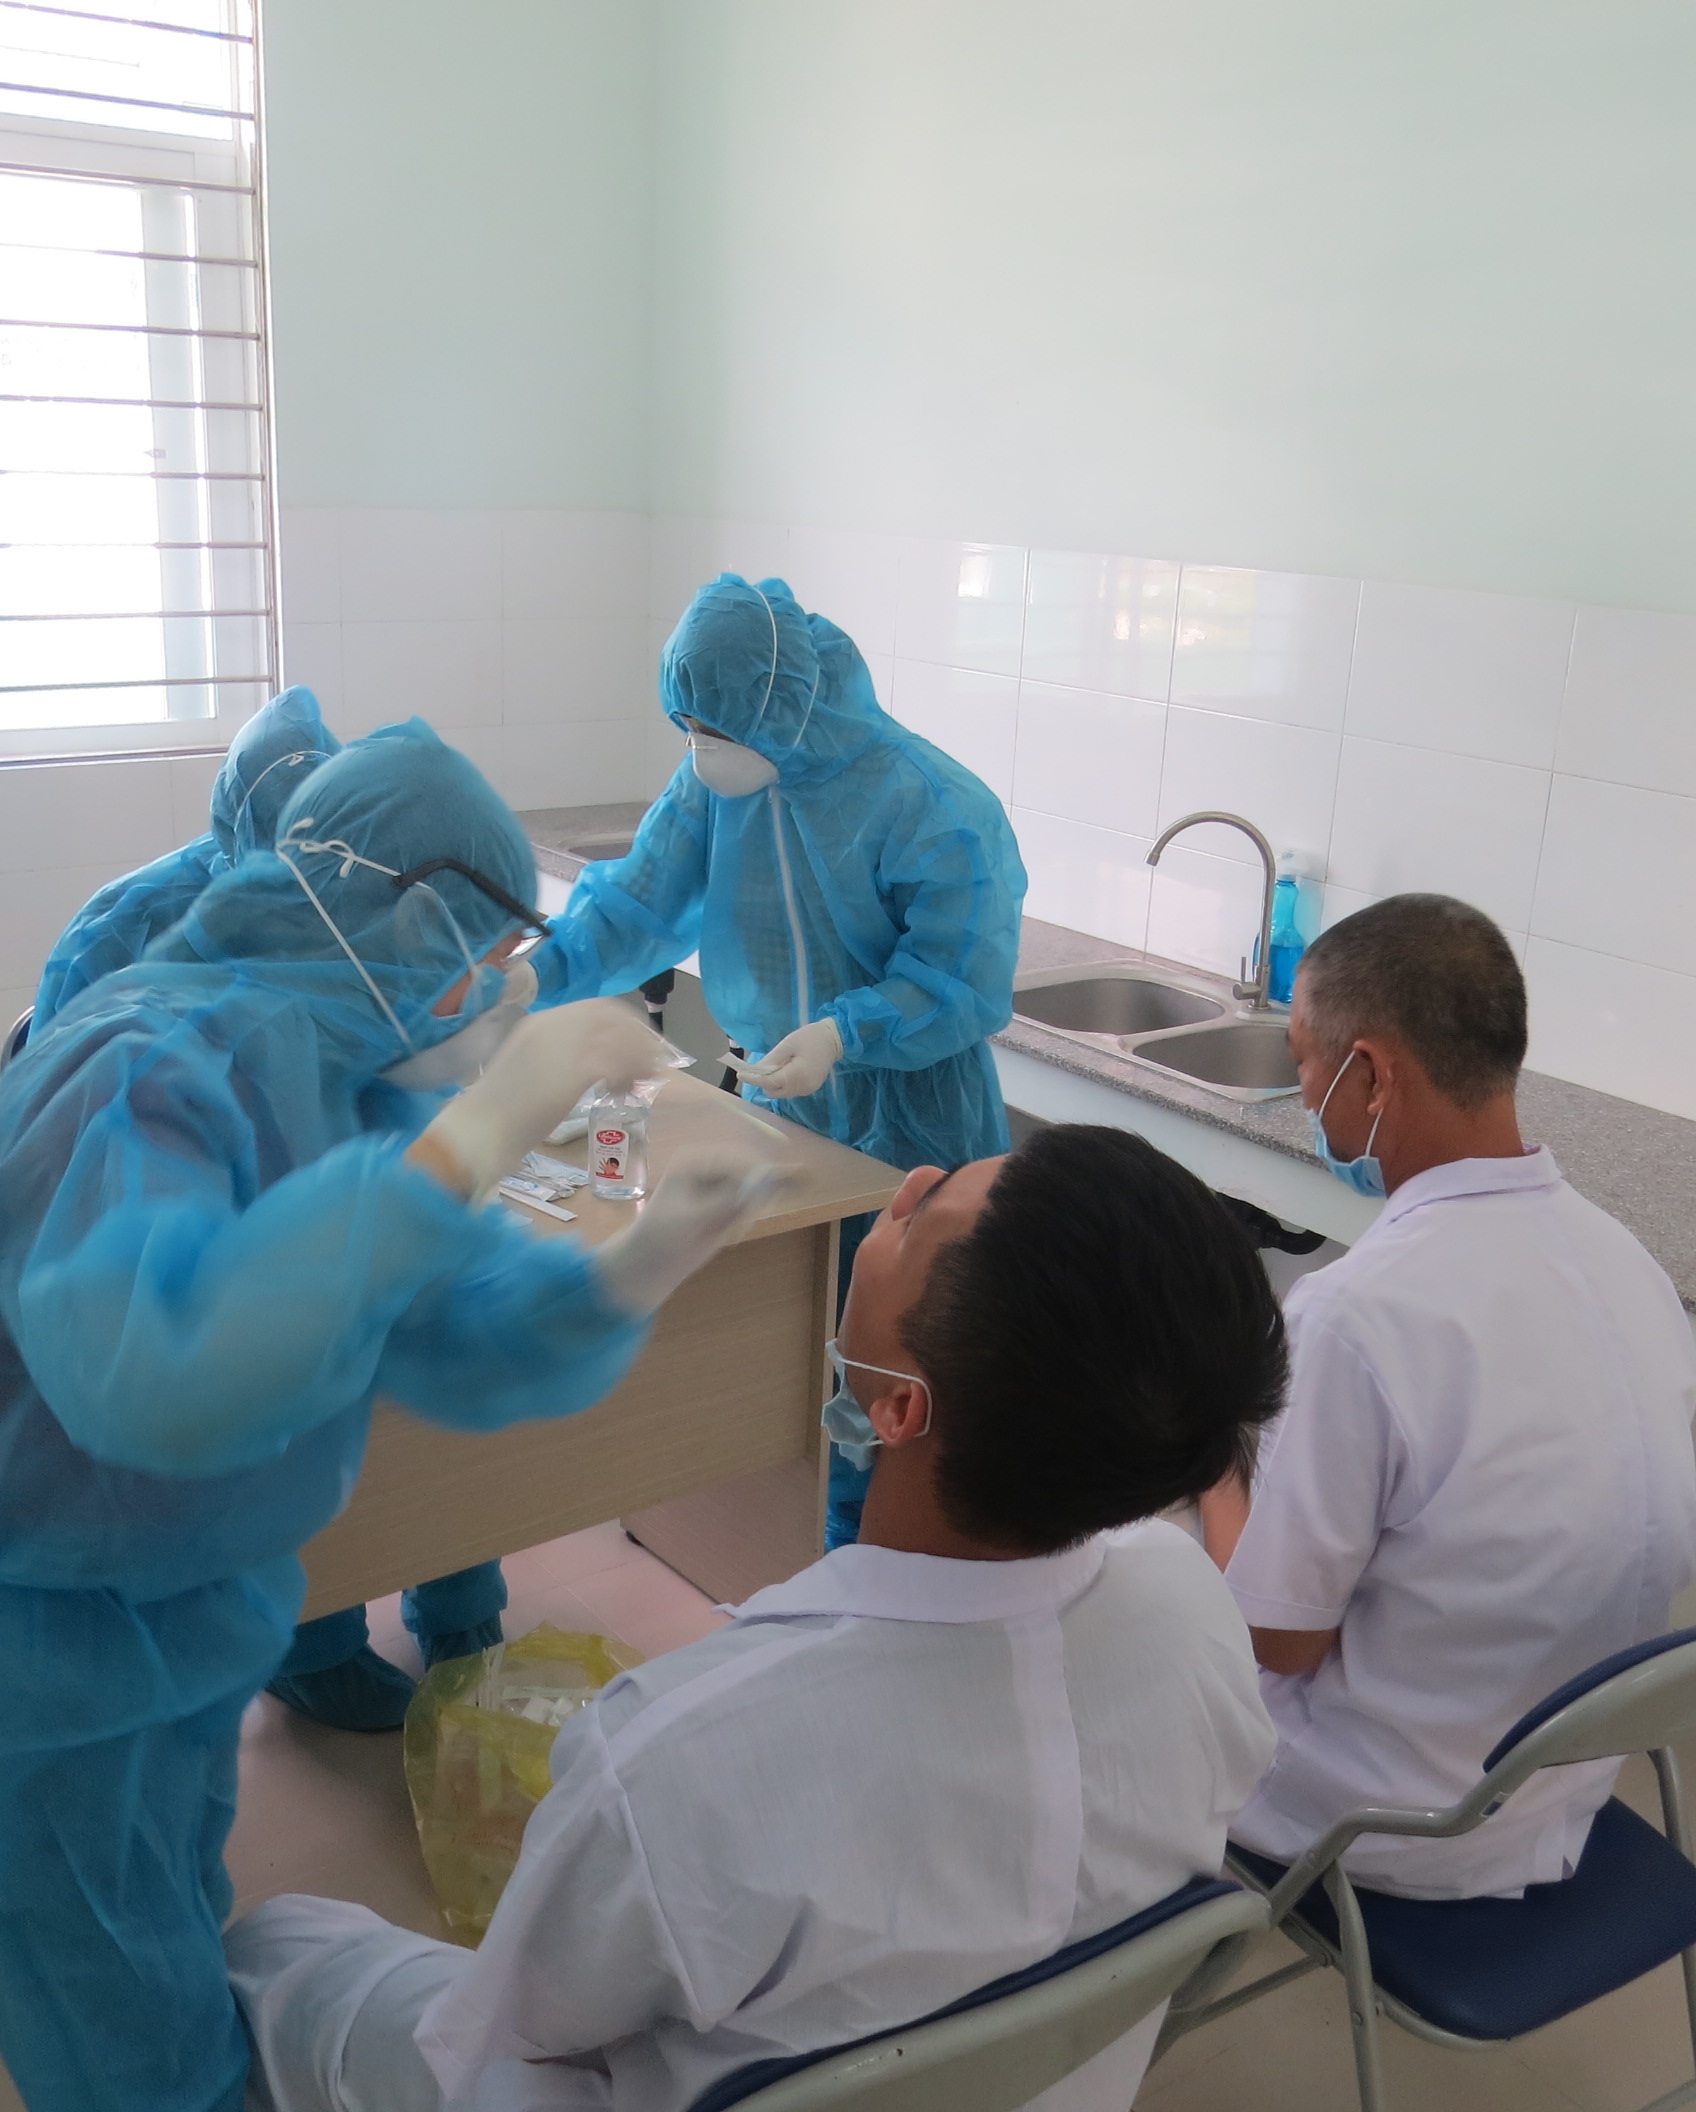 Cán bộ Y tế Trung tâm Kiểm soát bệnh tật tỉnh Khánh Hoà đang lấy mẫu bệnh phẩm cho các thuyền viên